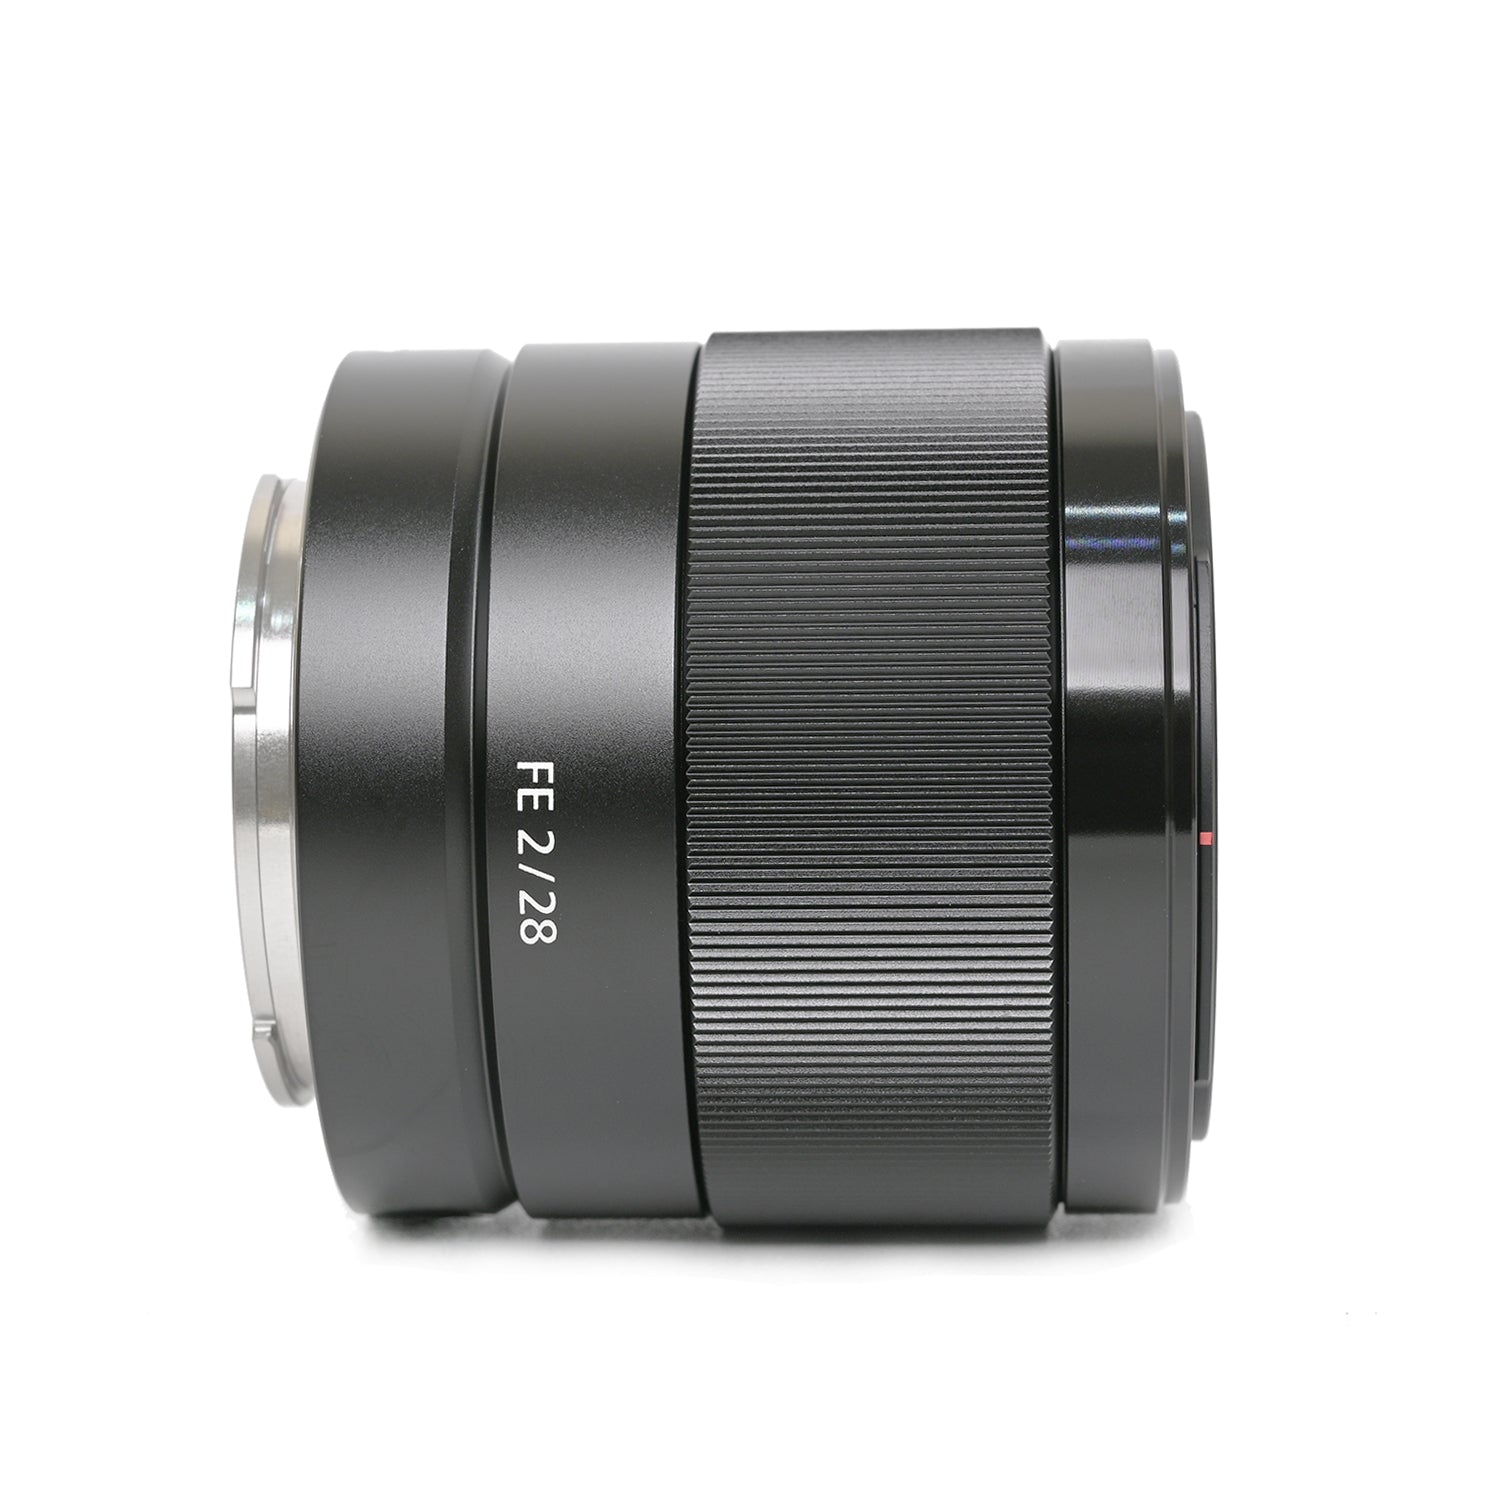 Sony FE 28mm F/2 Lens